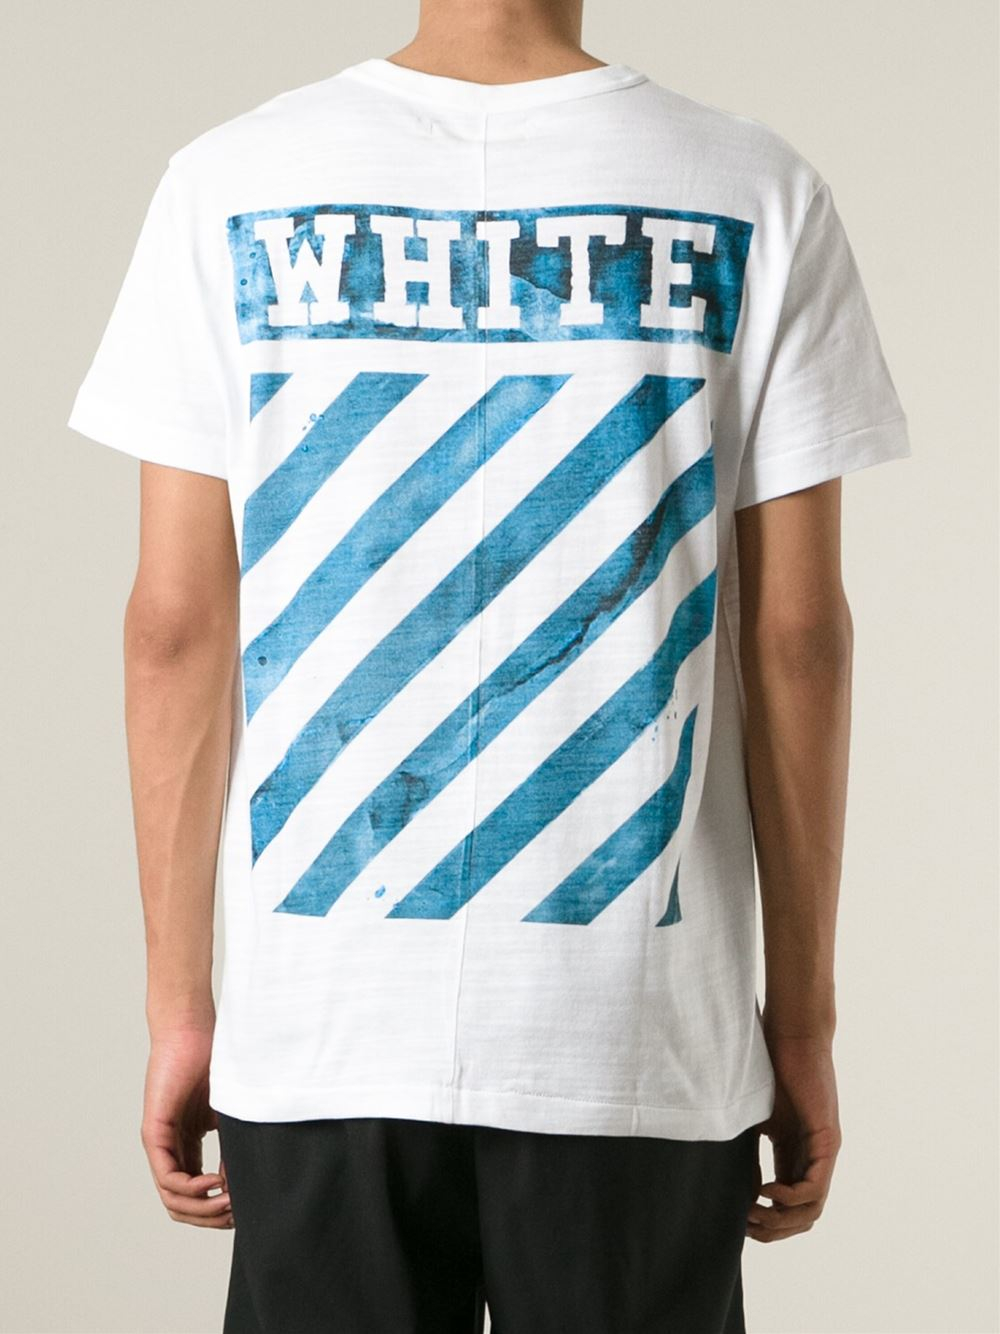 Off-White c/o Virgil Abloh Wave-Print T-Shirt in White for Men - Lyst